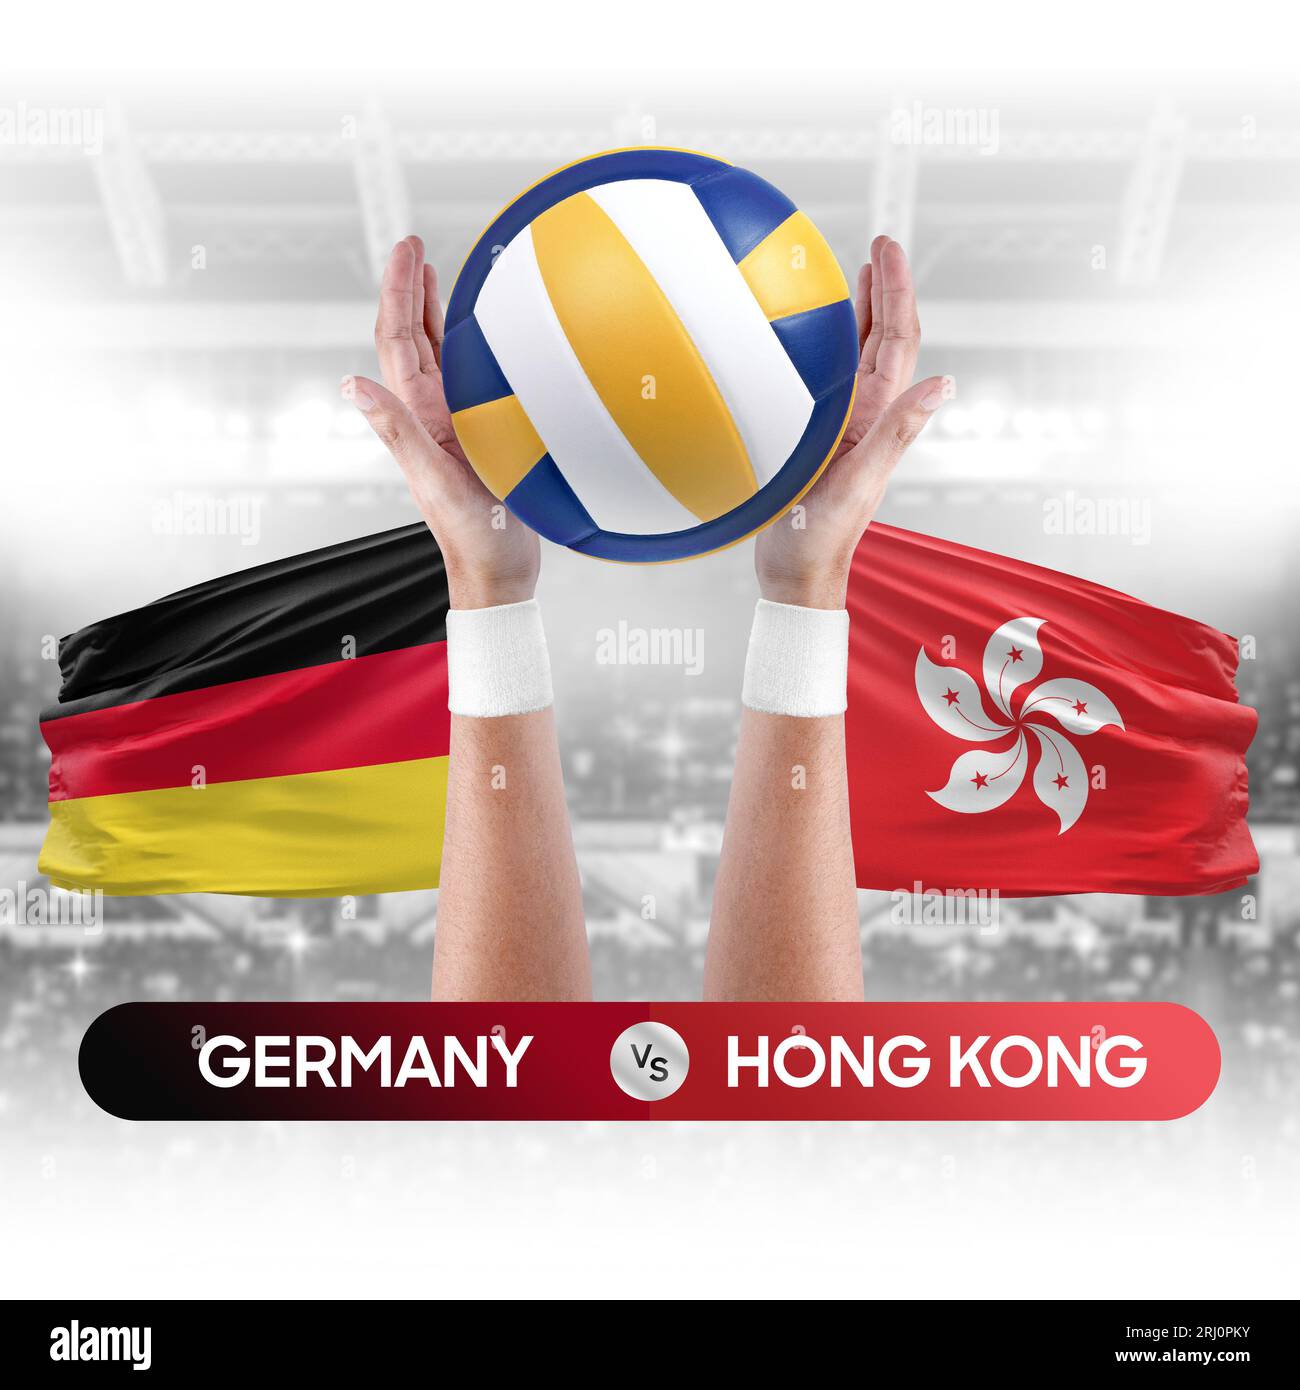 Deutschland gegen Hong Kong Nationalmannschaften Volleyball Volleyball-Ball-Match-Konzept. Stockfoto